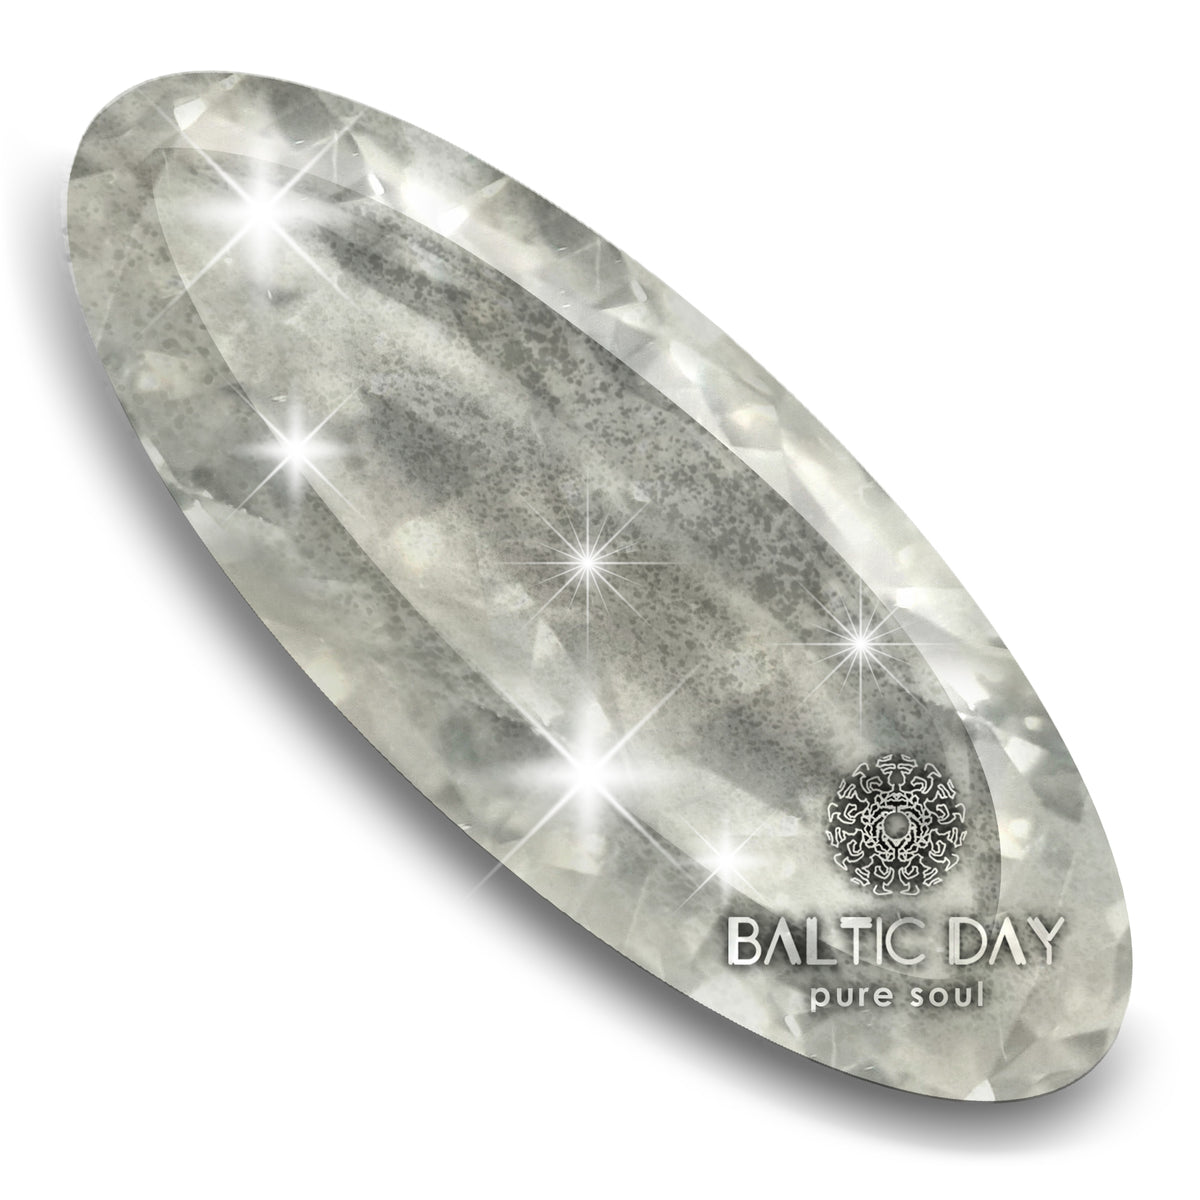 Baltic Day gold Diamond Rain Mica Powder for Epoxy Resin Art Super